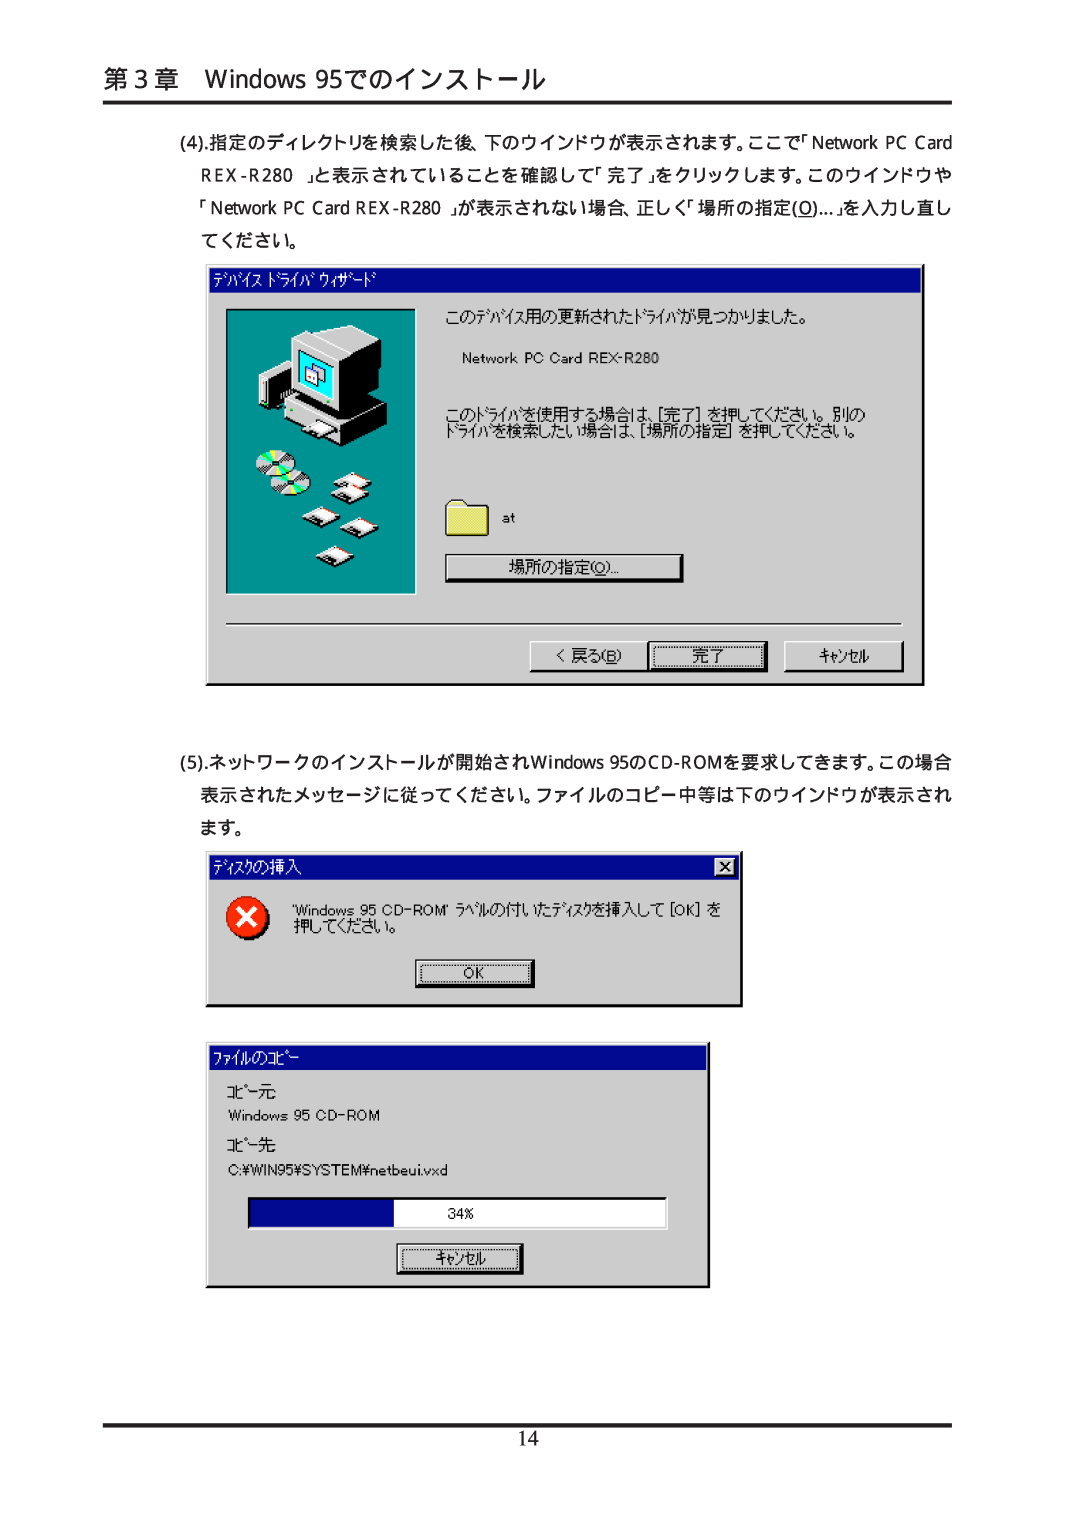 Ratoc Systems REX-R280 manual 第３章 Windows 95でのインストール, 4.指定のディレクトリを検索した後、下のウインドウが表示されます。ここで「Network PC Card 